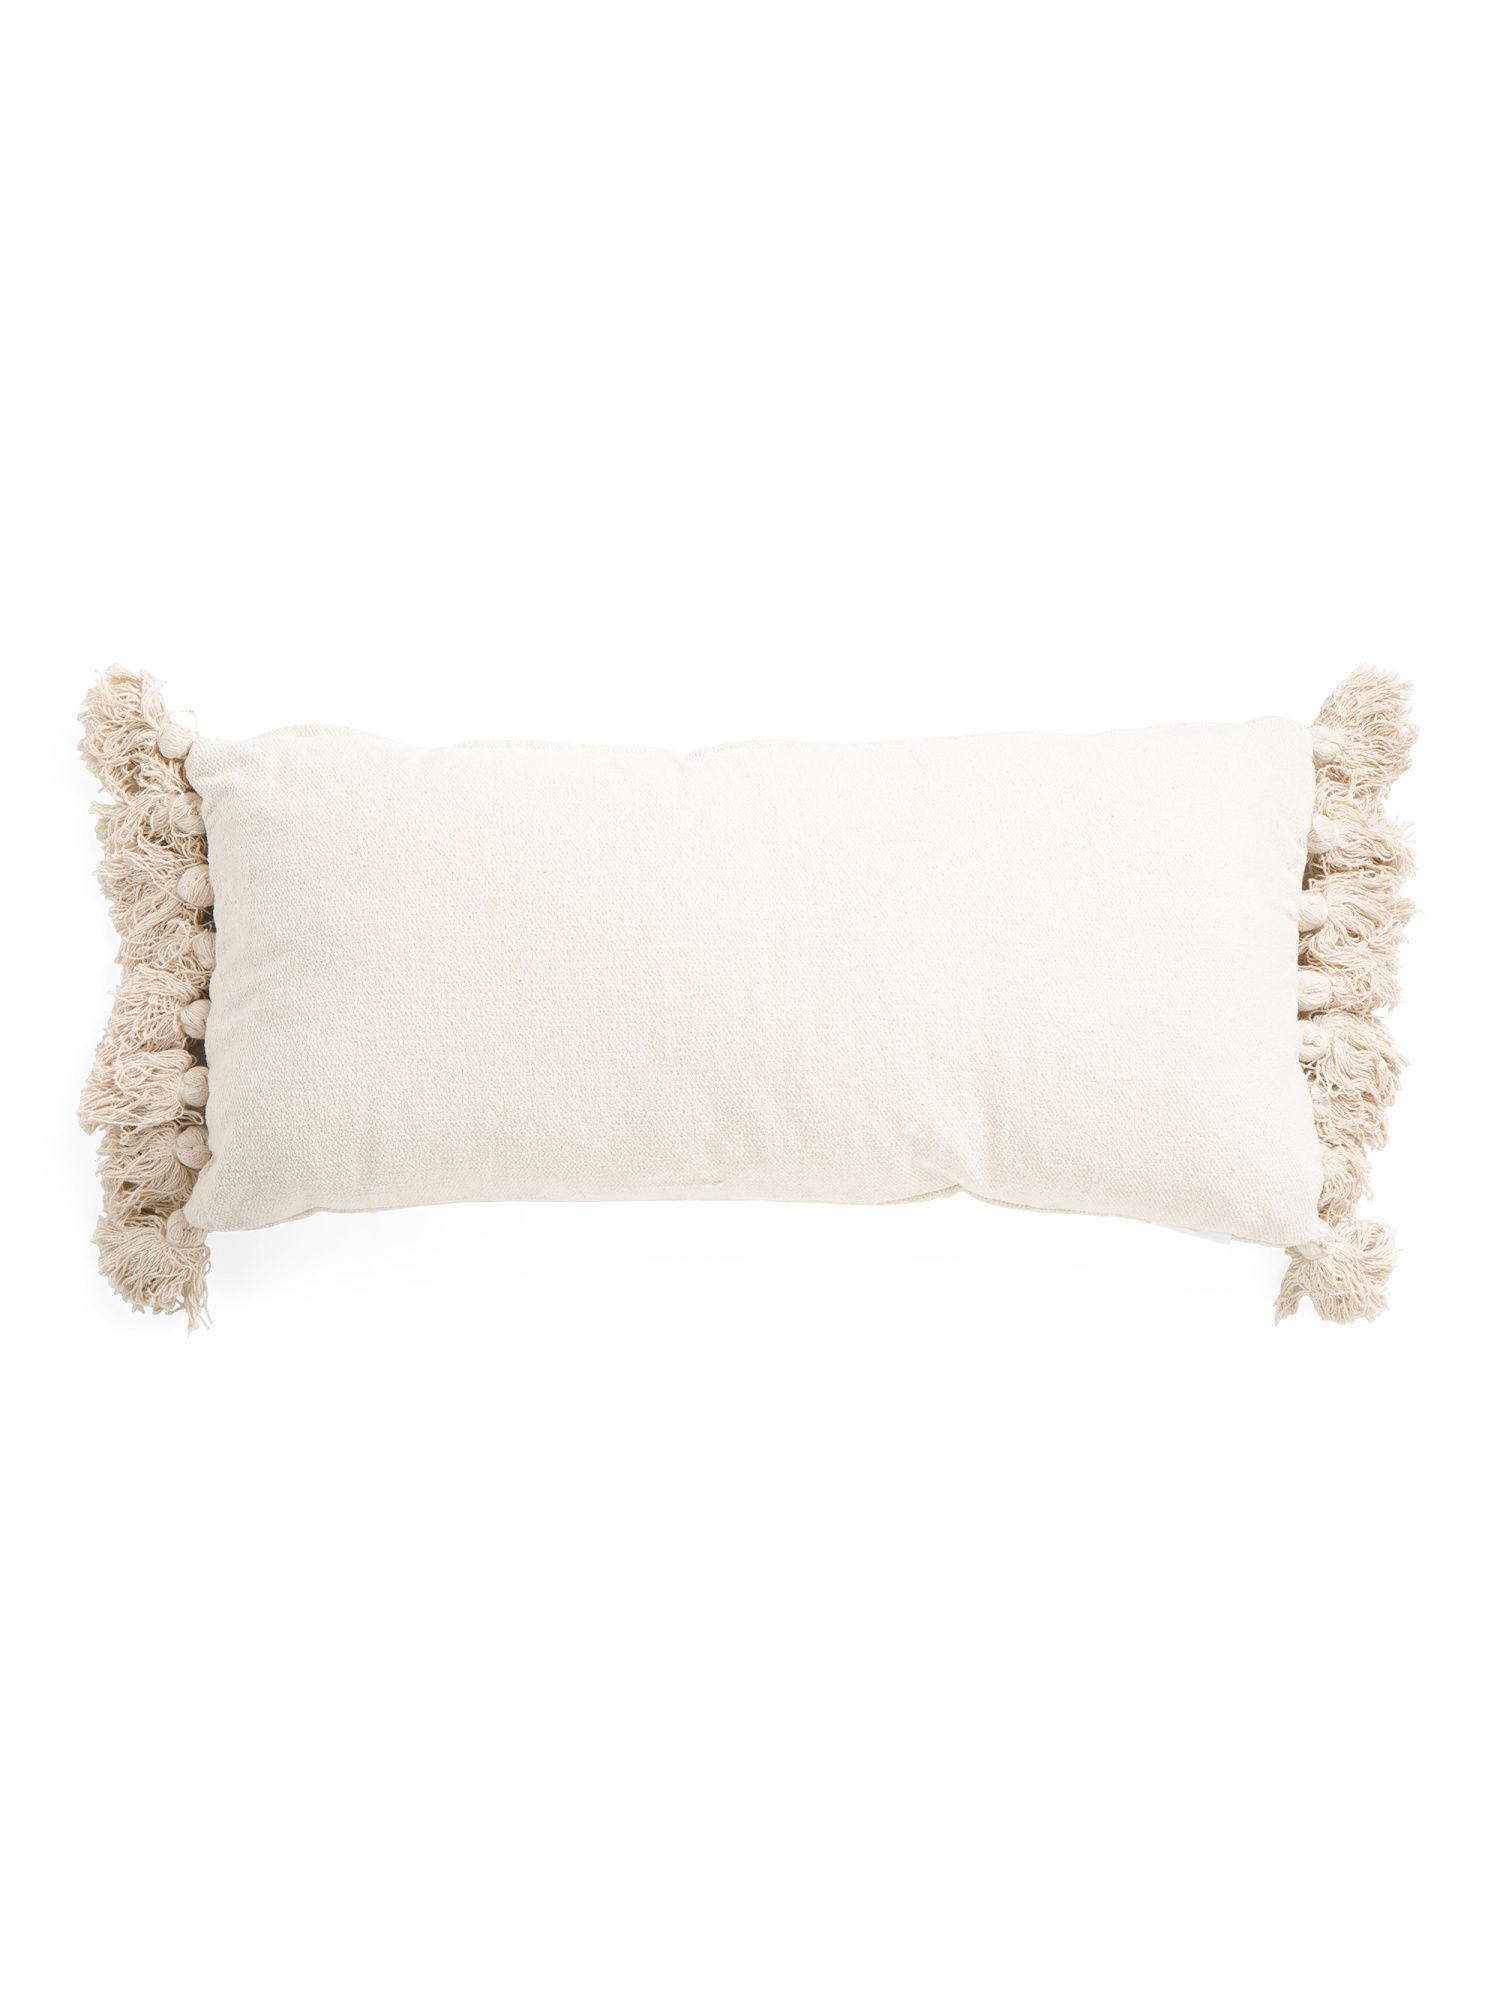 14x30 Soft Lumbar Pillow With Tassels | TJ Maxx